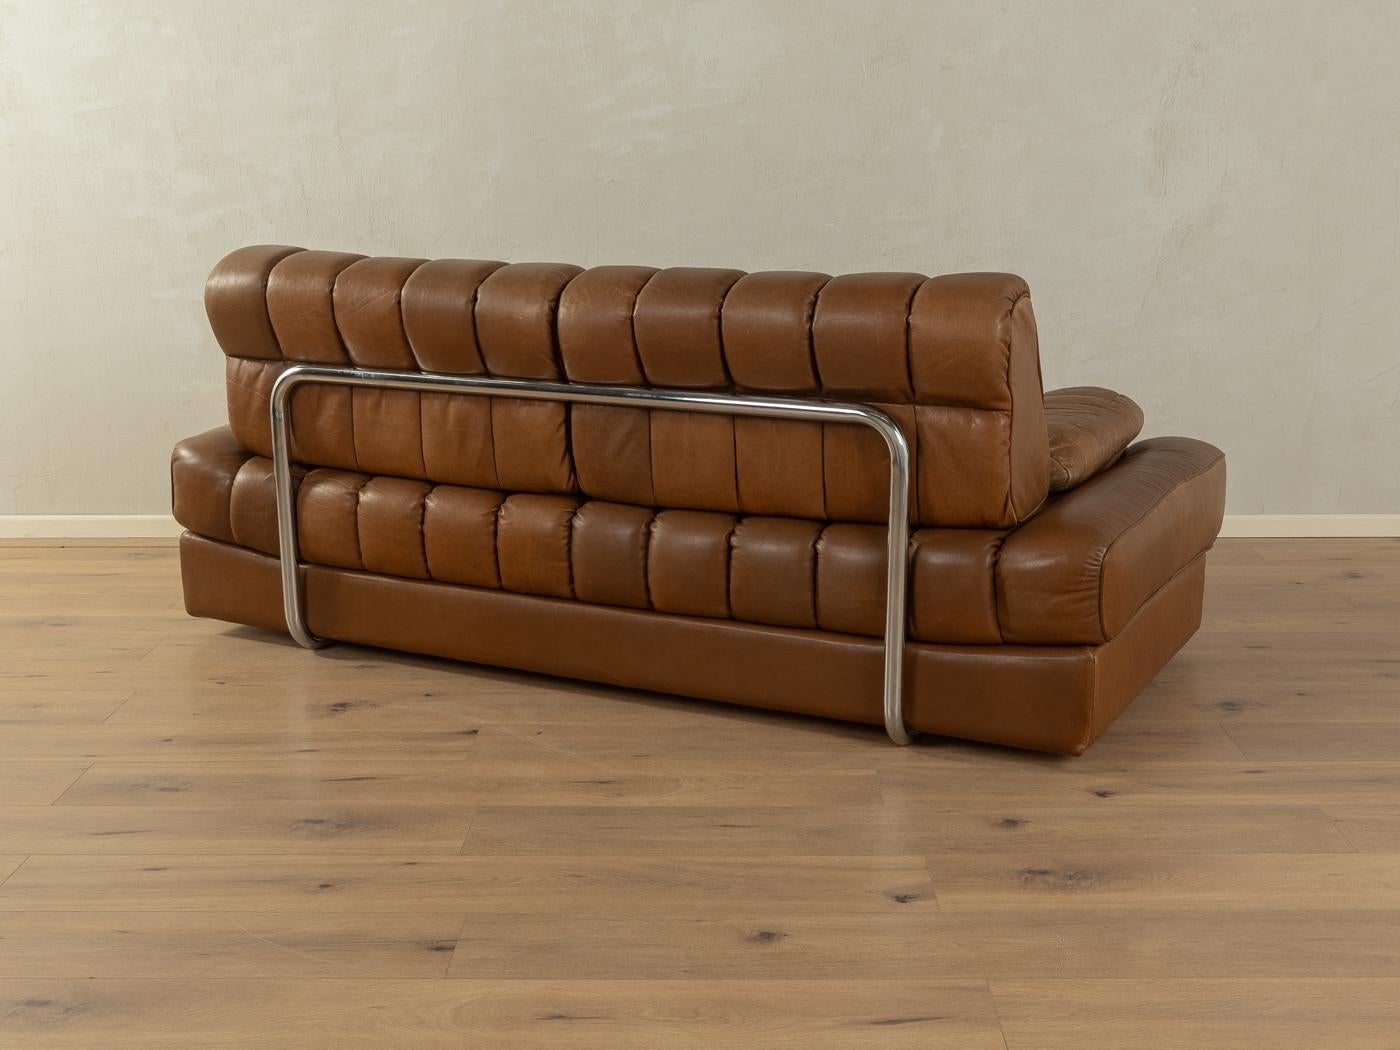  Convertible sofa, de Sede, DS-85  5